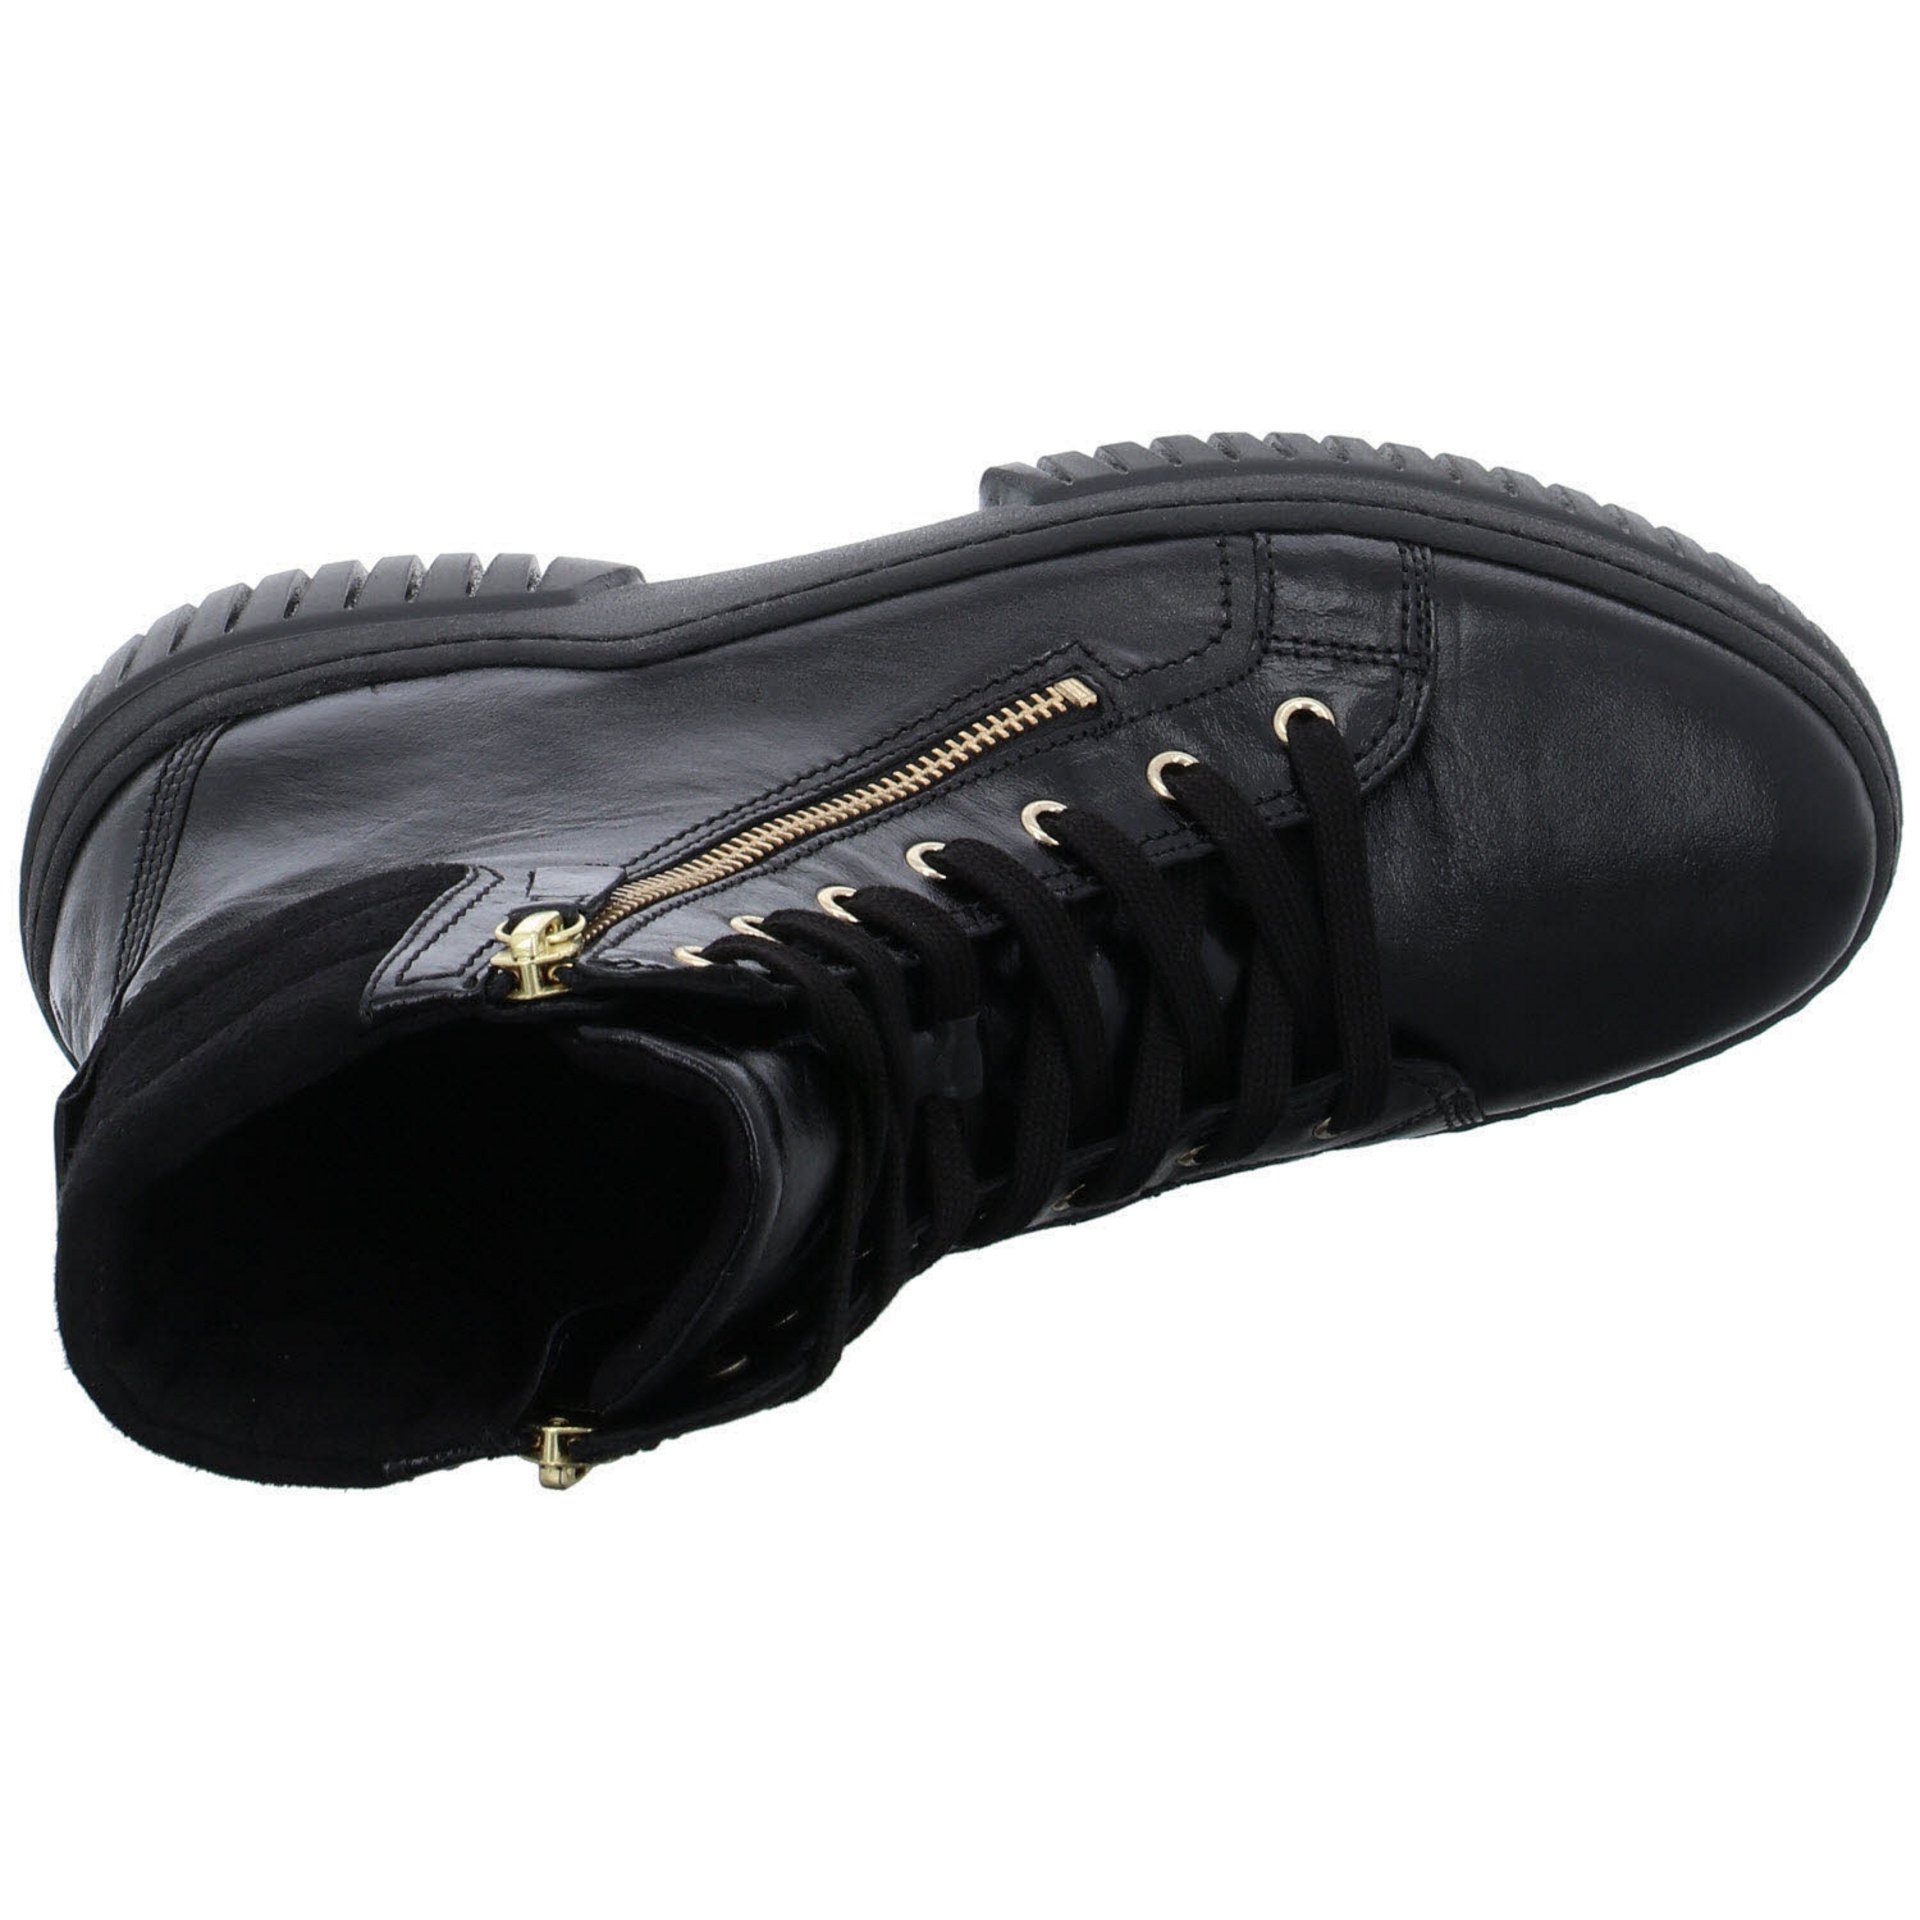 Glattleder Damen (gold) schwarz Boots Freizeit Gabor Schuhe Schnürstiefel Elegant Stiefeletten